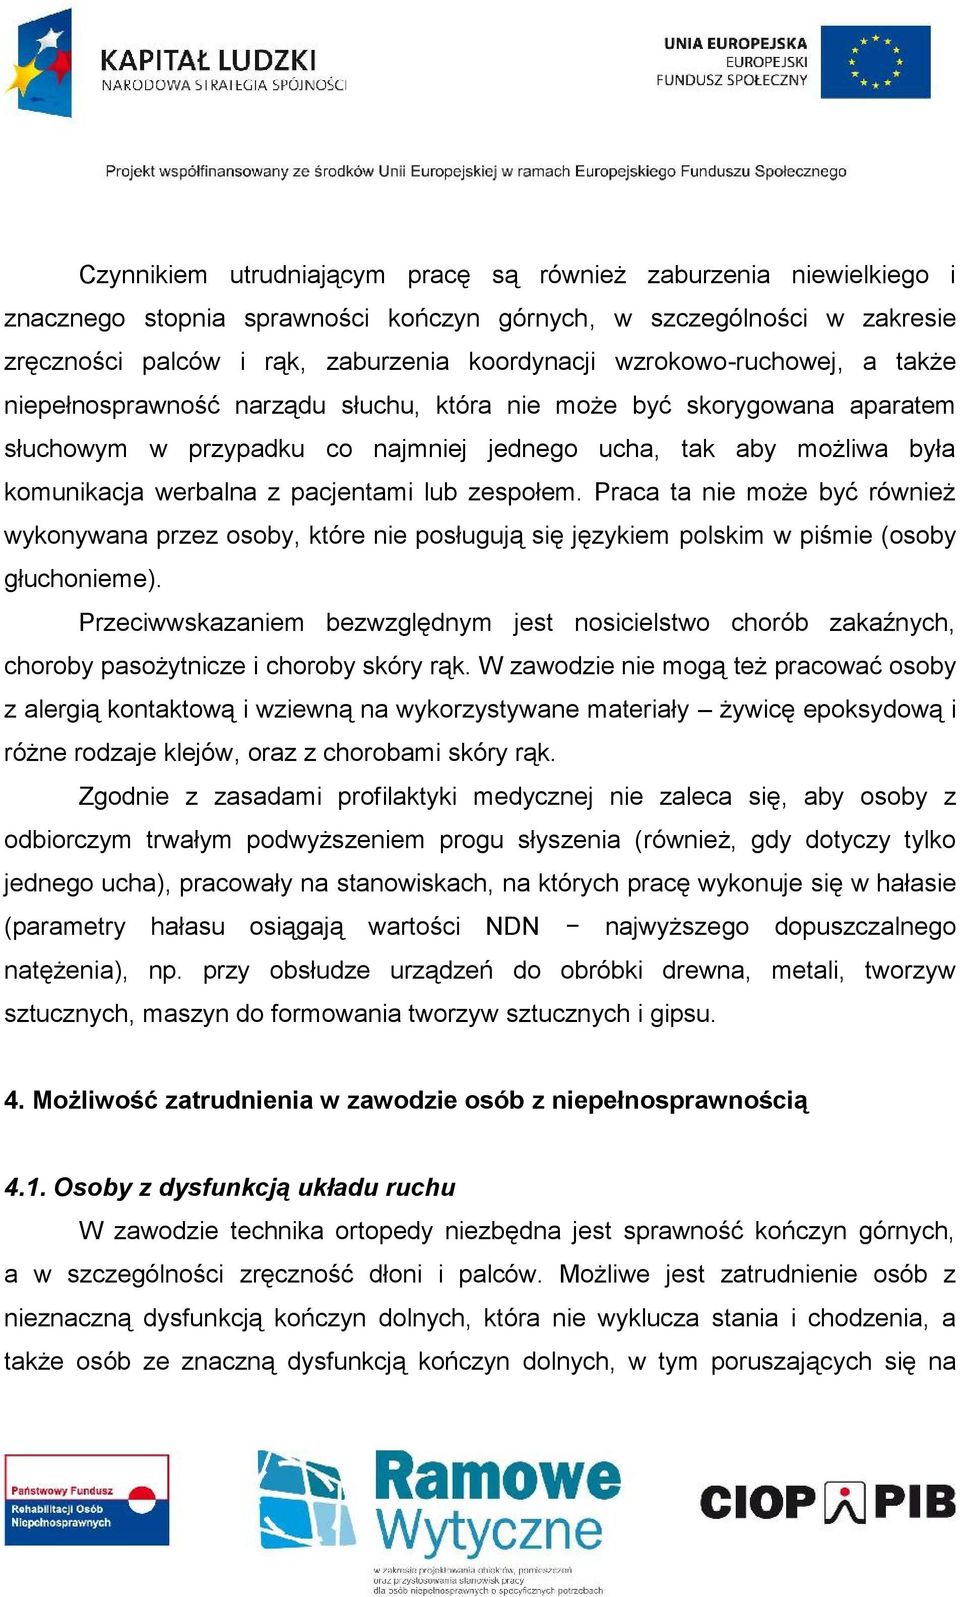 pacjentami lub zespołem. Praca ta nie może być również wykonywana przez osoby, które nie posługują się językiem polskim w piśmie (osoby głuchonieme).